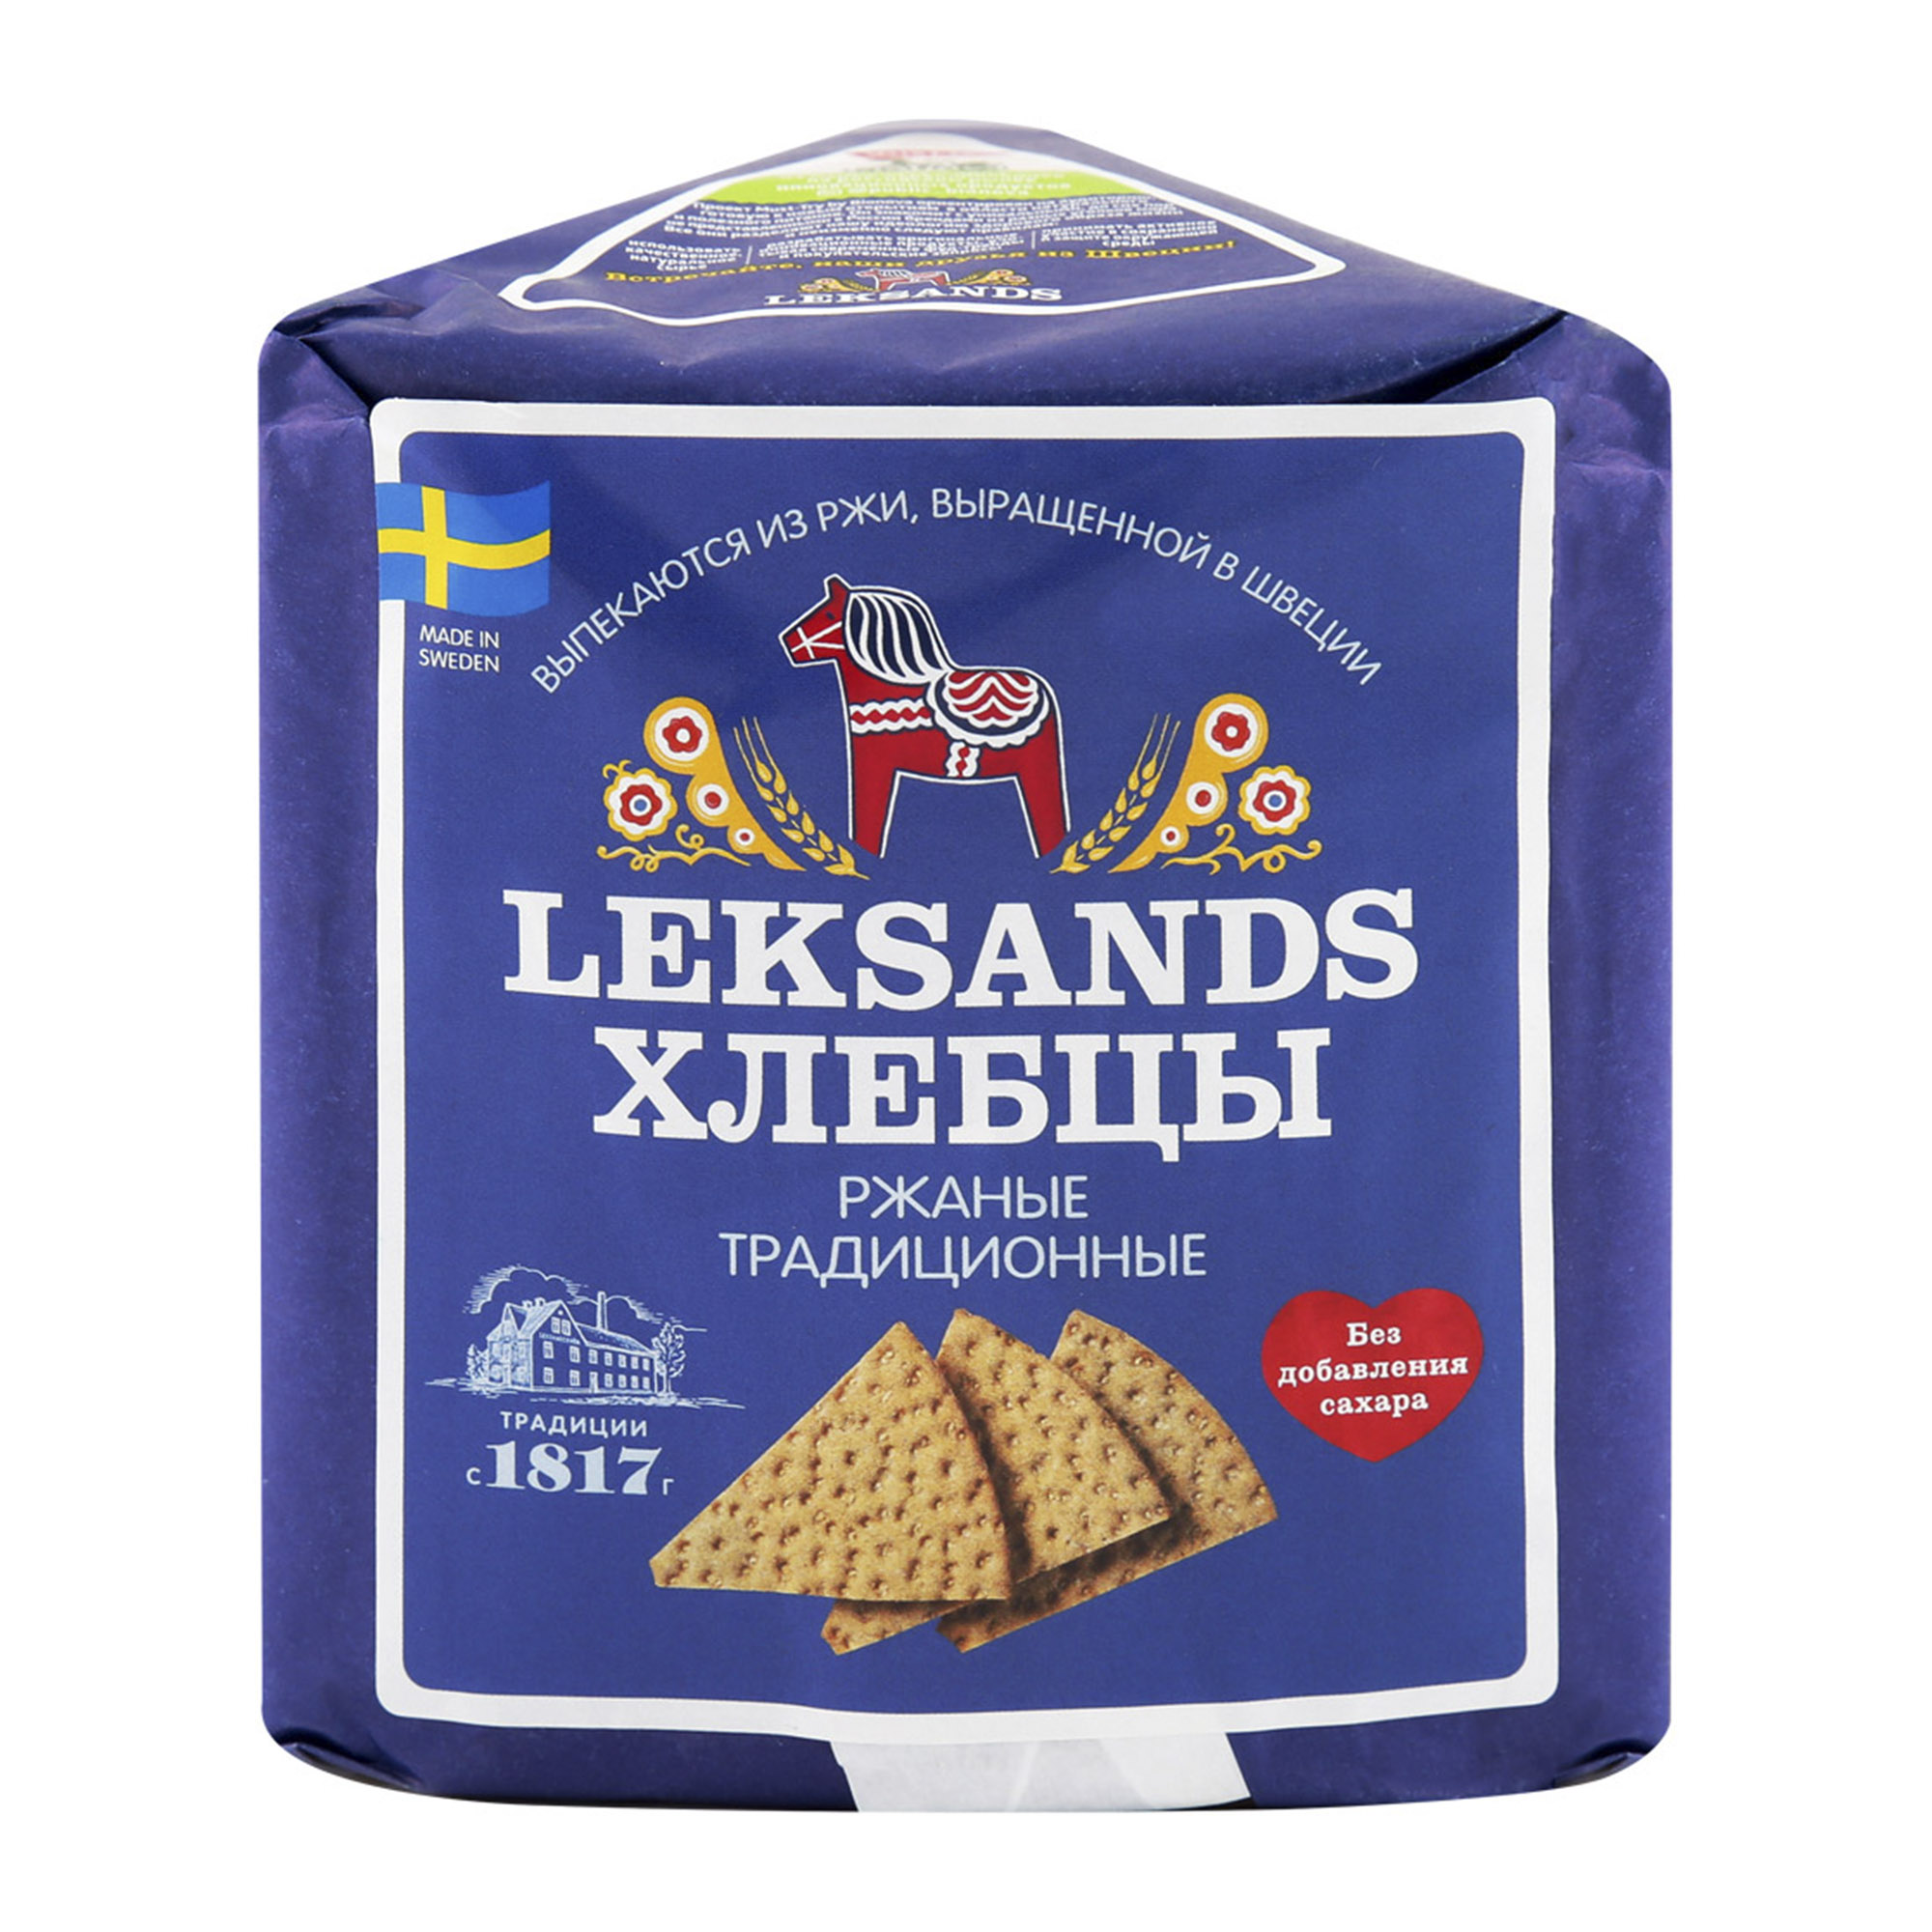 Хлебцы Leksands Ржаные традиционные 200 г - фото 1